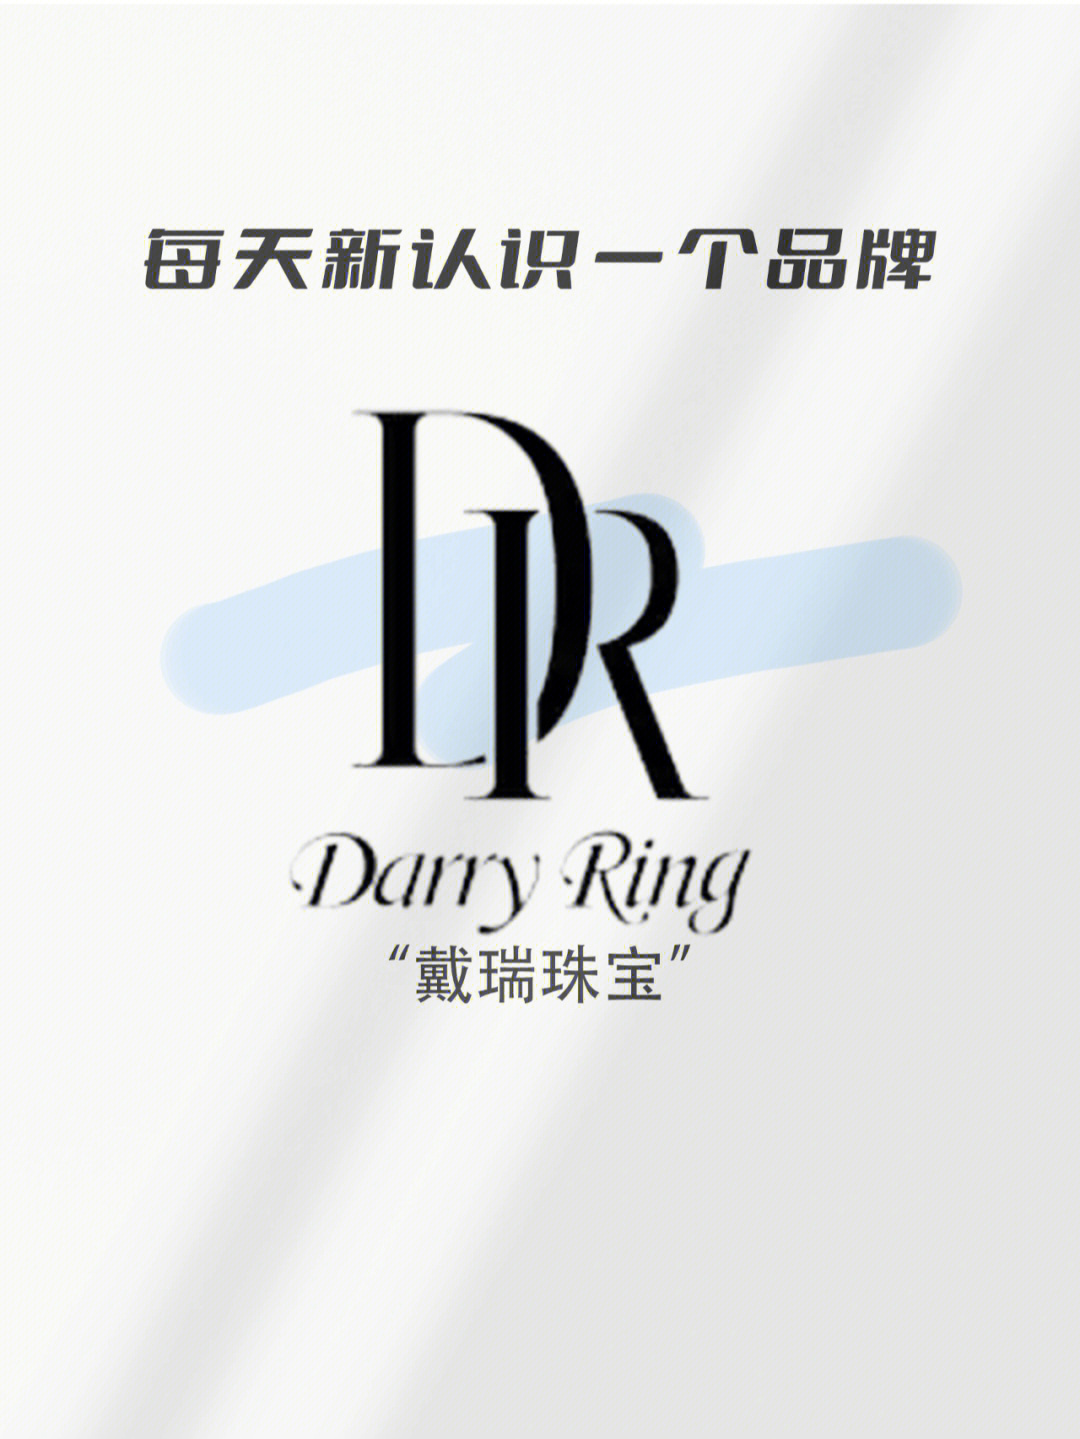 戴瑞珠宝 logo图片